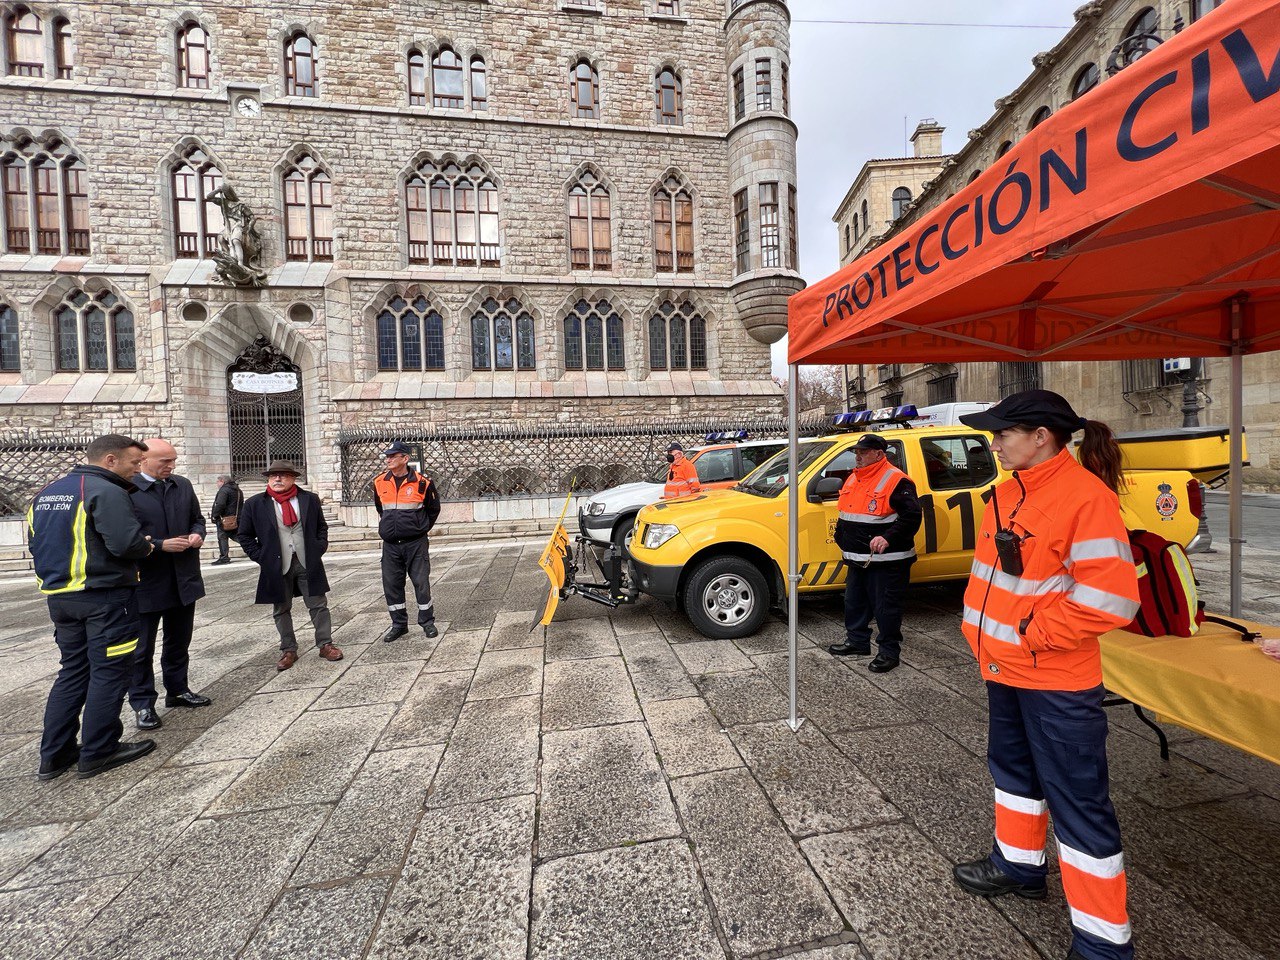 El alcalde de León visita la exposición de Protección Civil ubicada en la plaza San Marcelo